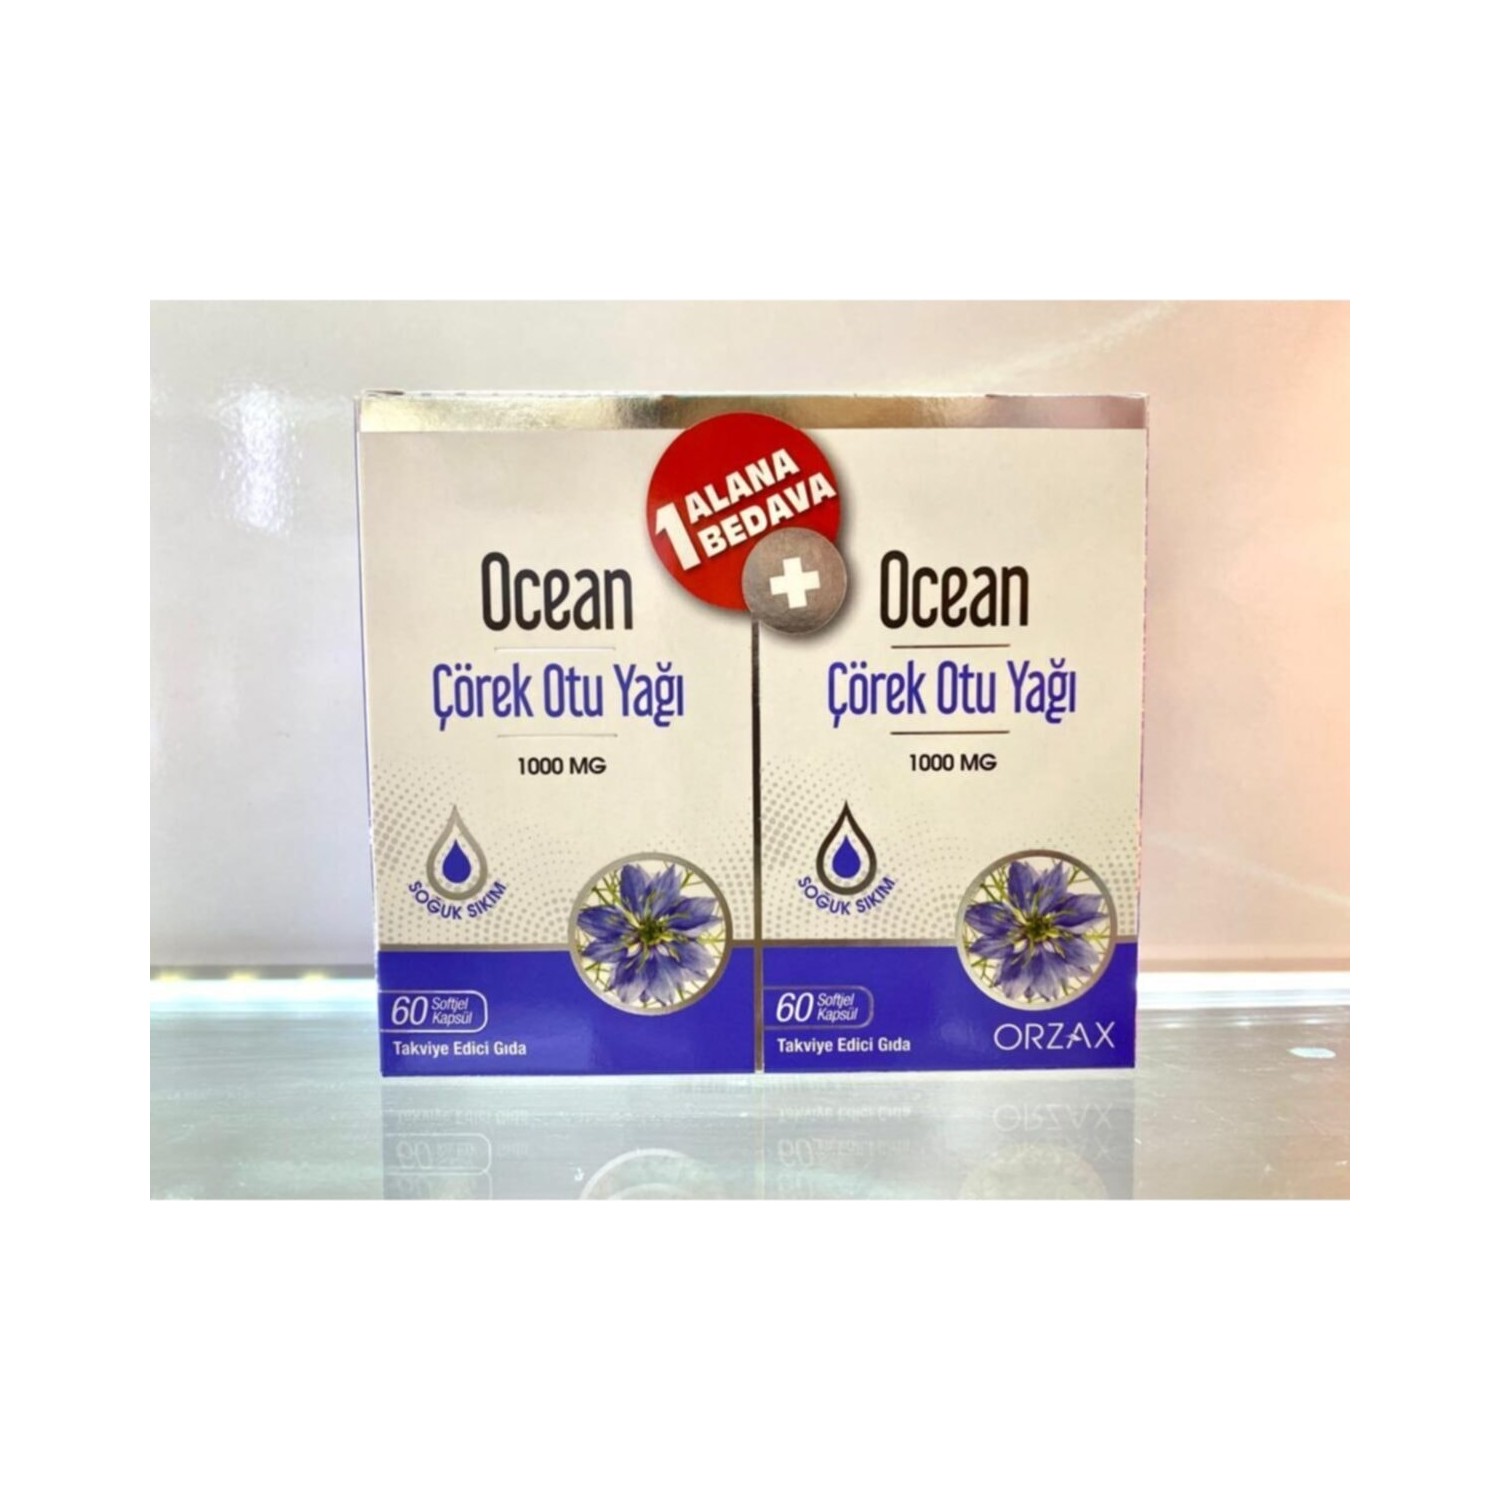 Масло черного тмина Orzax Ocean 1000 мг, 2 упаковки по 60 капсул масло черного тмина в капсулах ocean